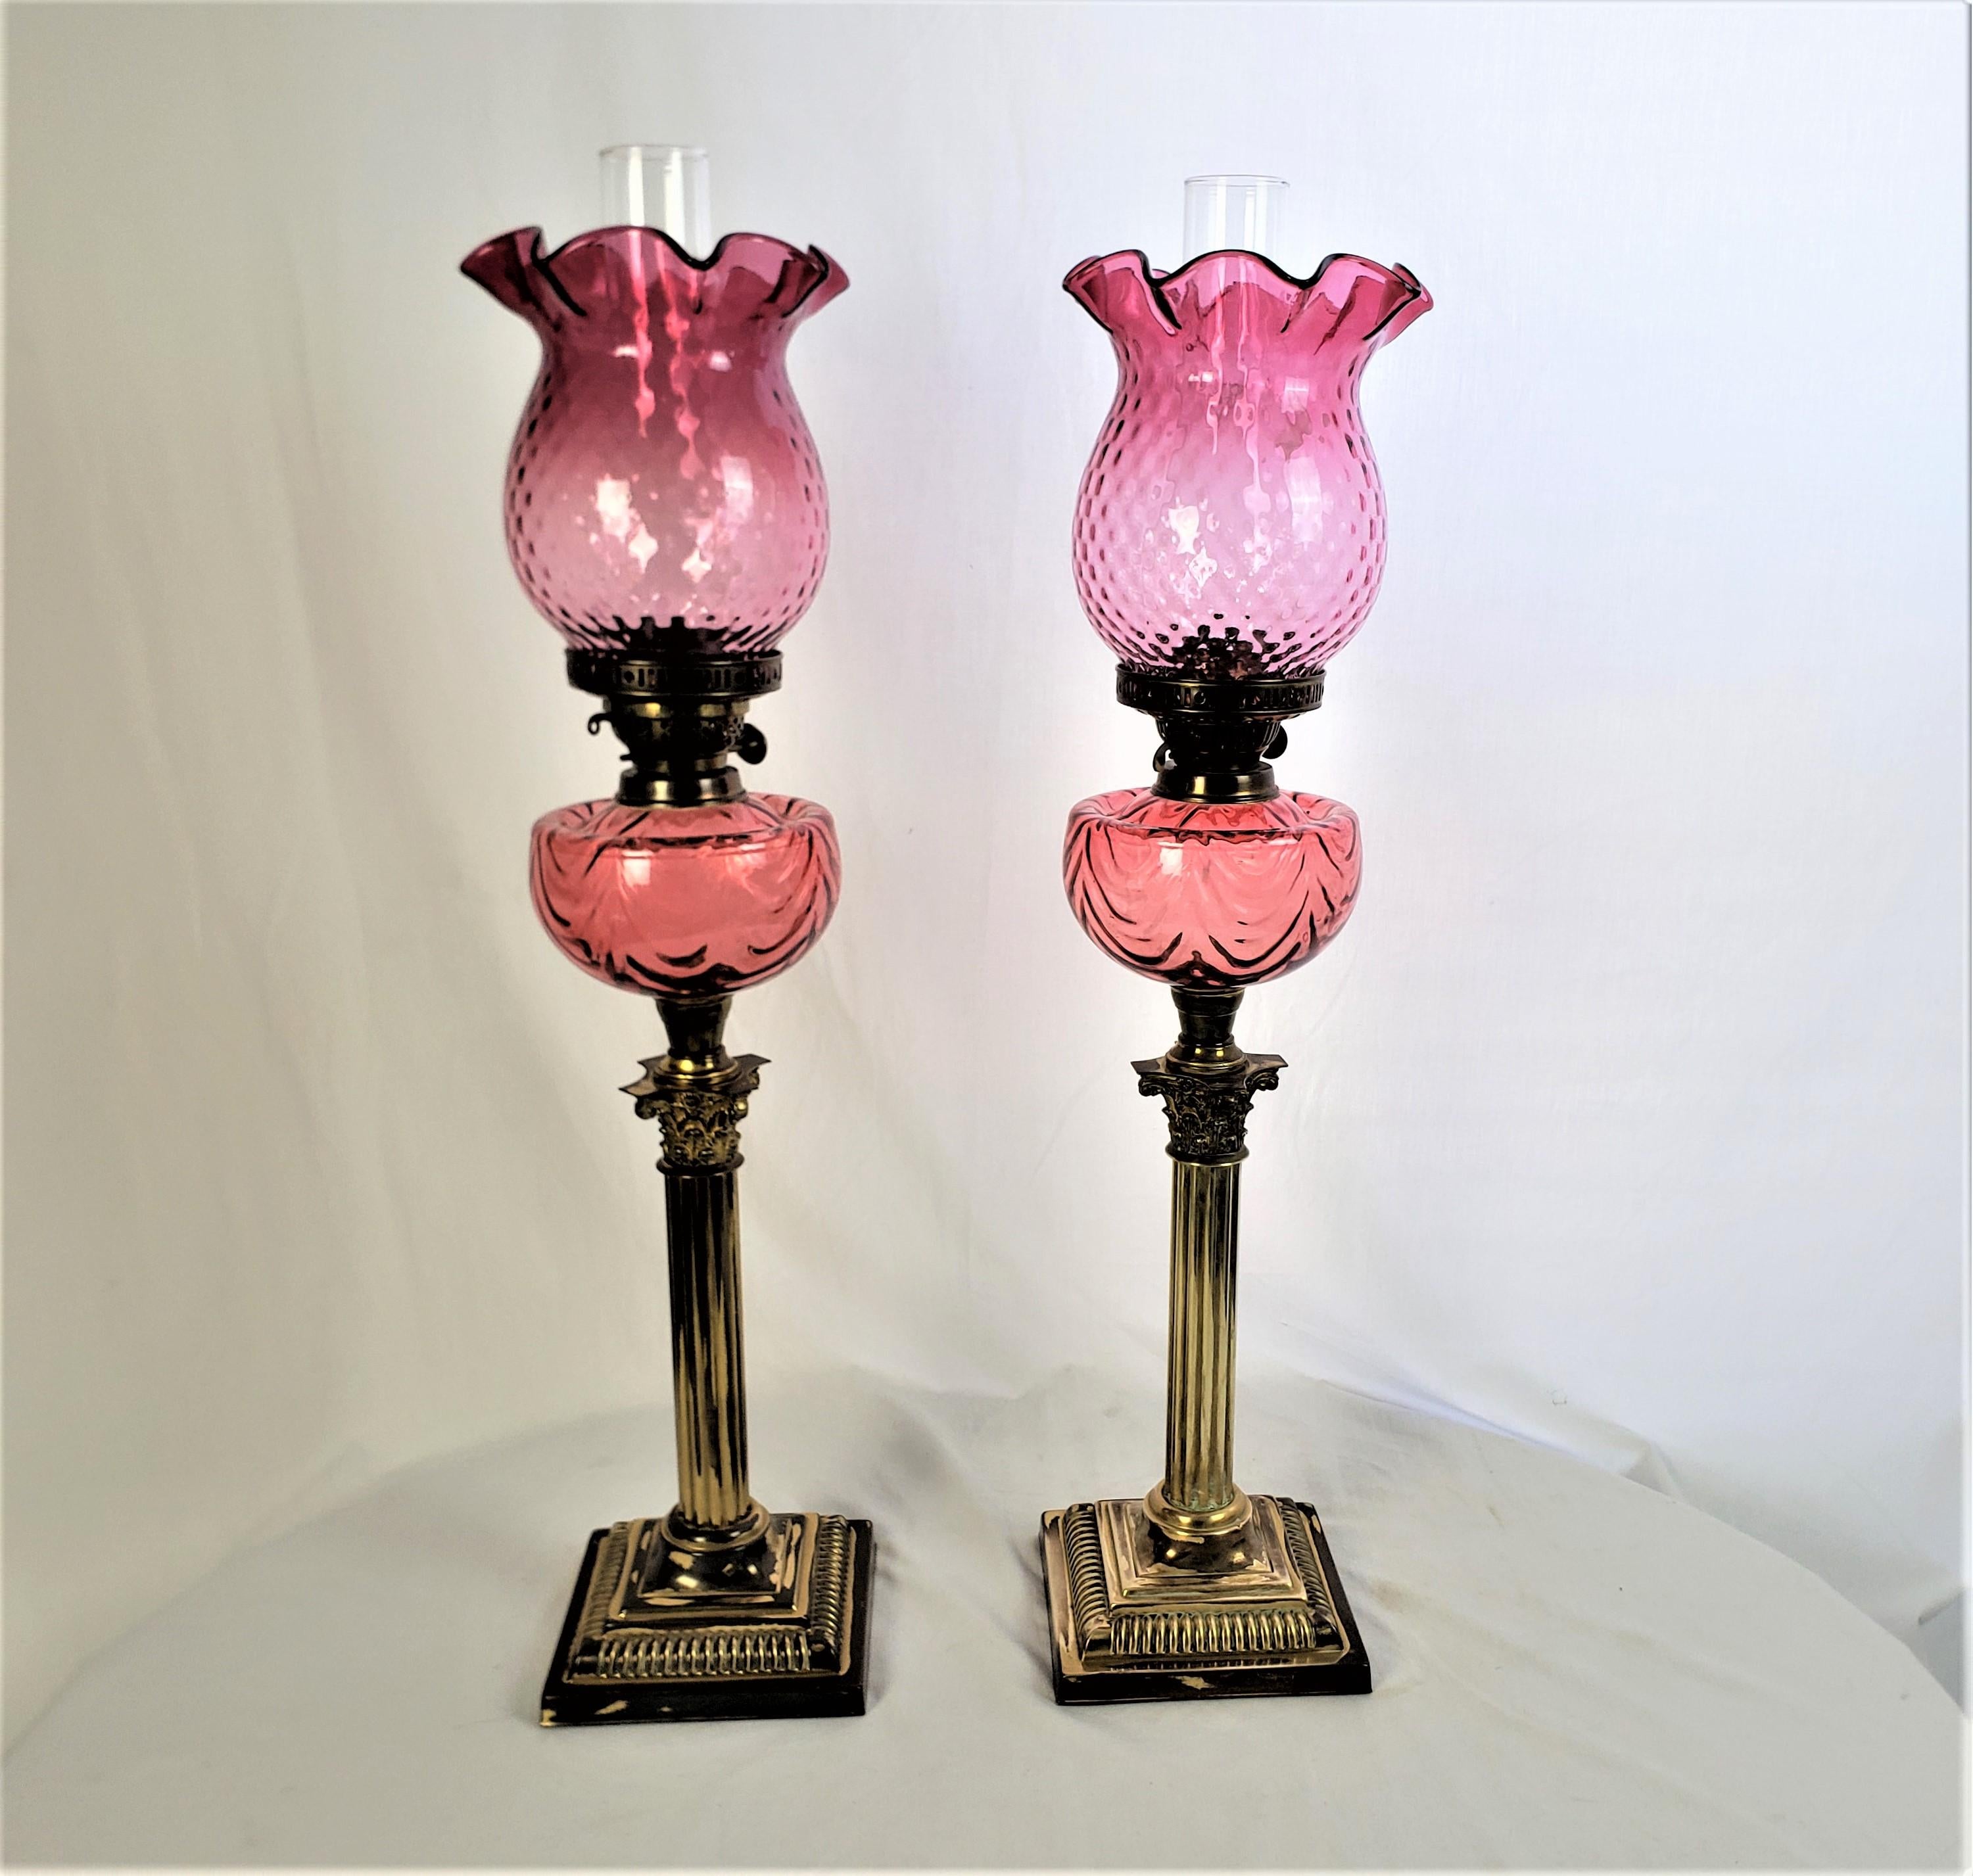 Cette paire de lampes de banquet ou de salon antiques provient probablement d'Angleterre et date d'environ 1880. Elle est réalisée dans le style victorien de l'époque. Les bases des lampes sont en laiton et ont un style de colonne corinthienne.